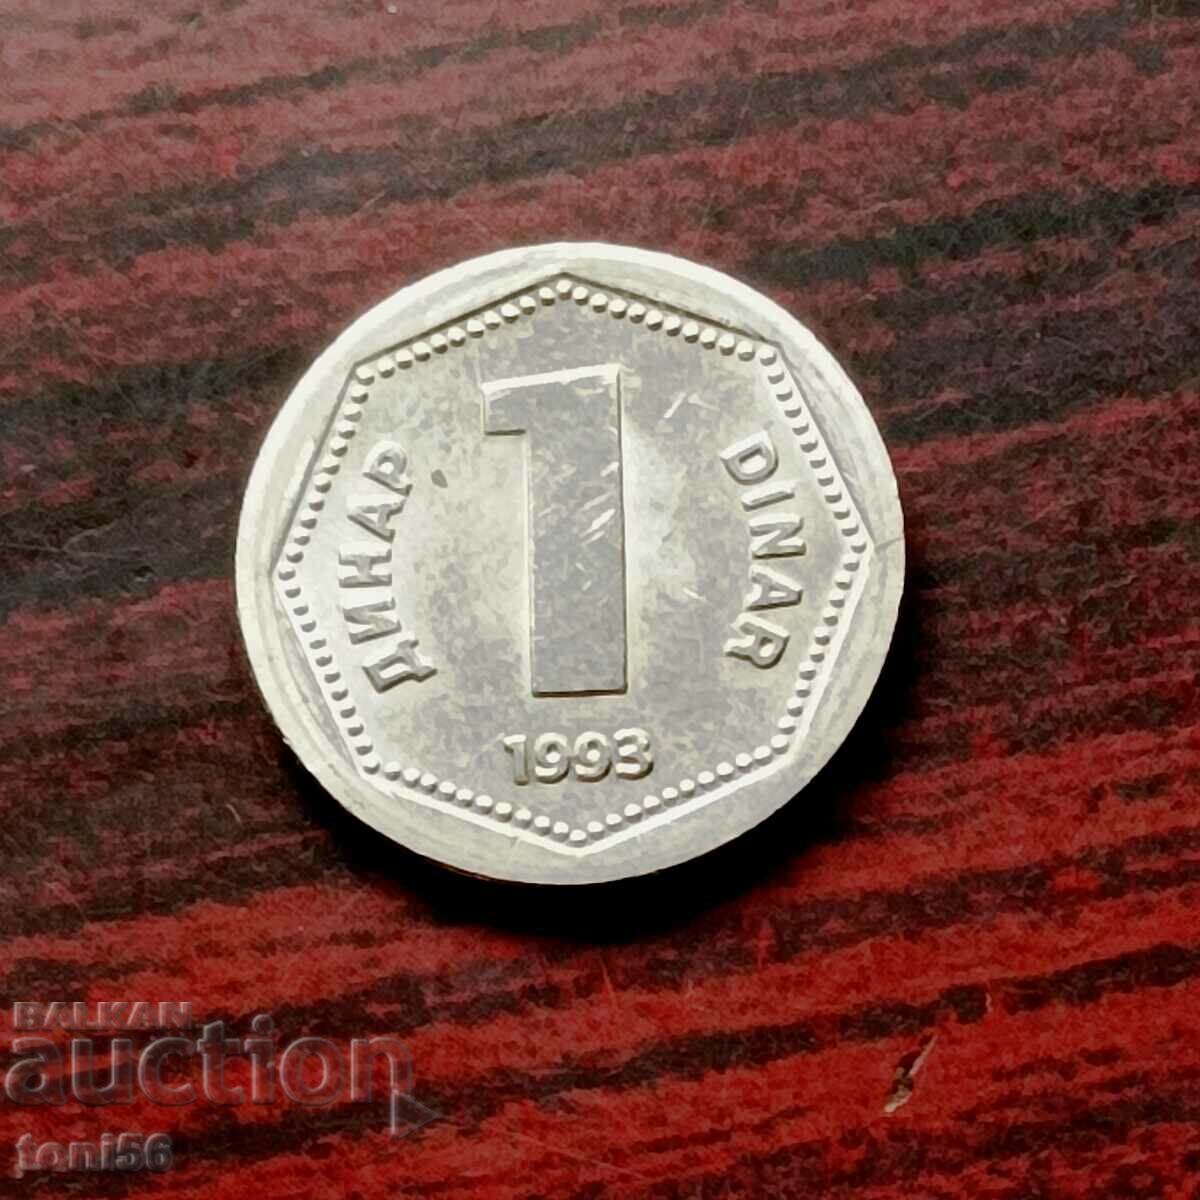 Iugoslavia 1 dinar 1993 UNC